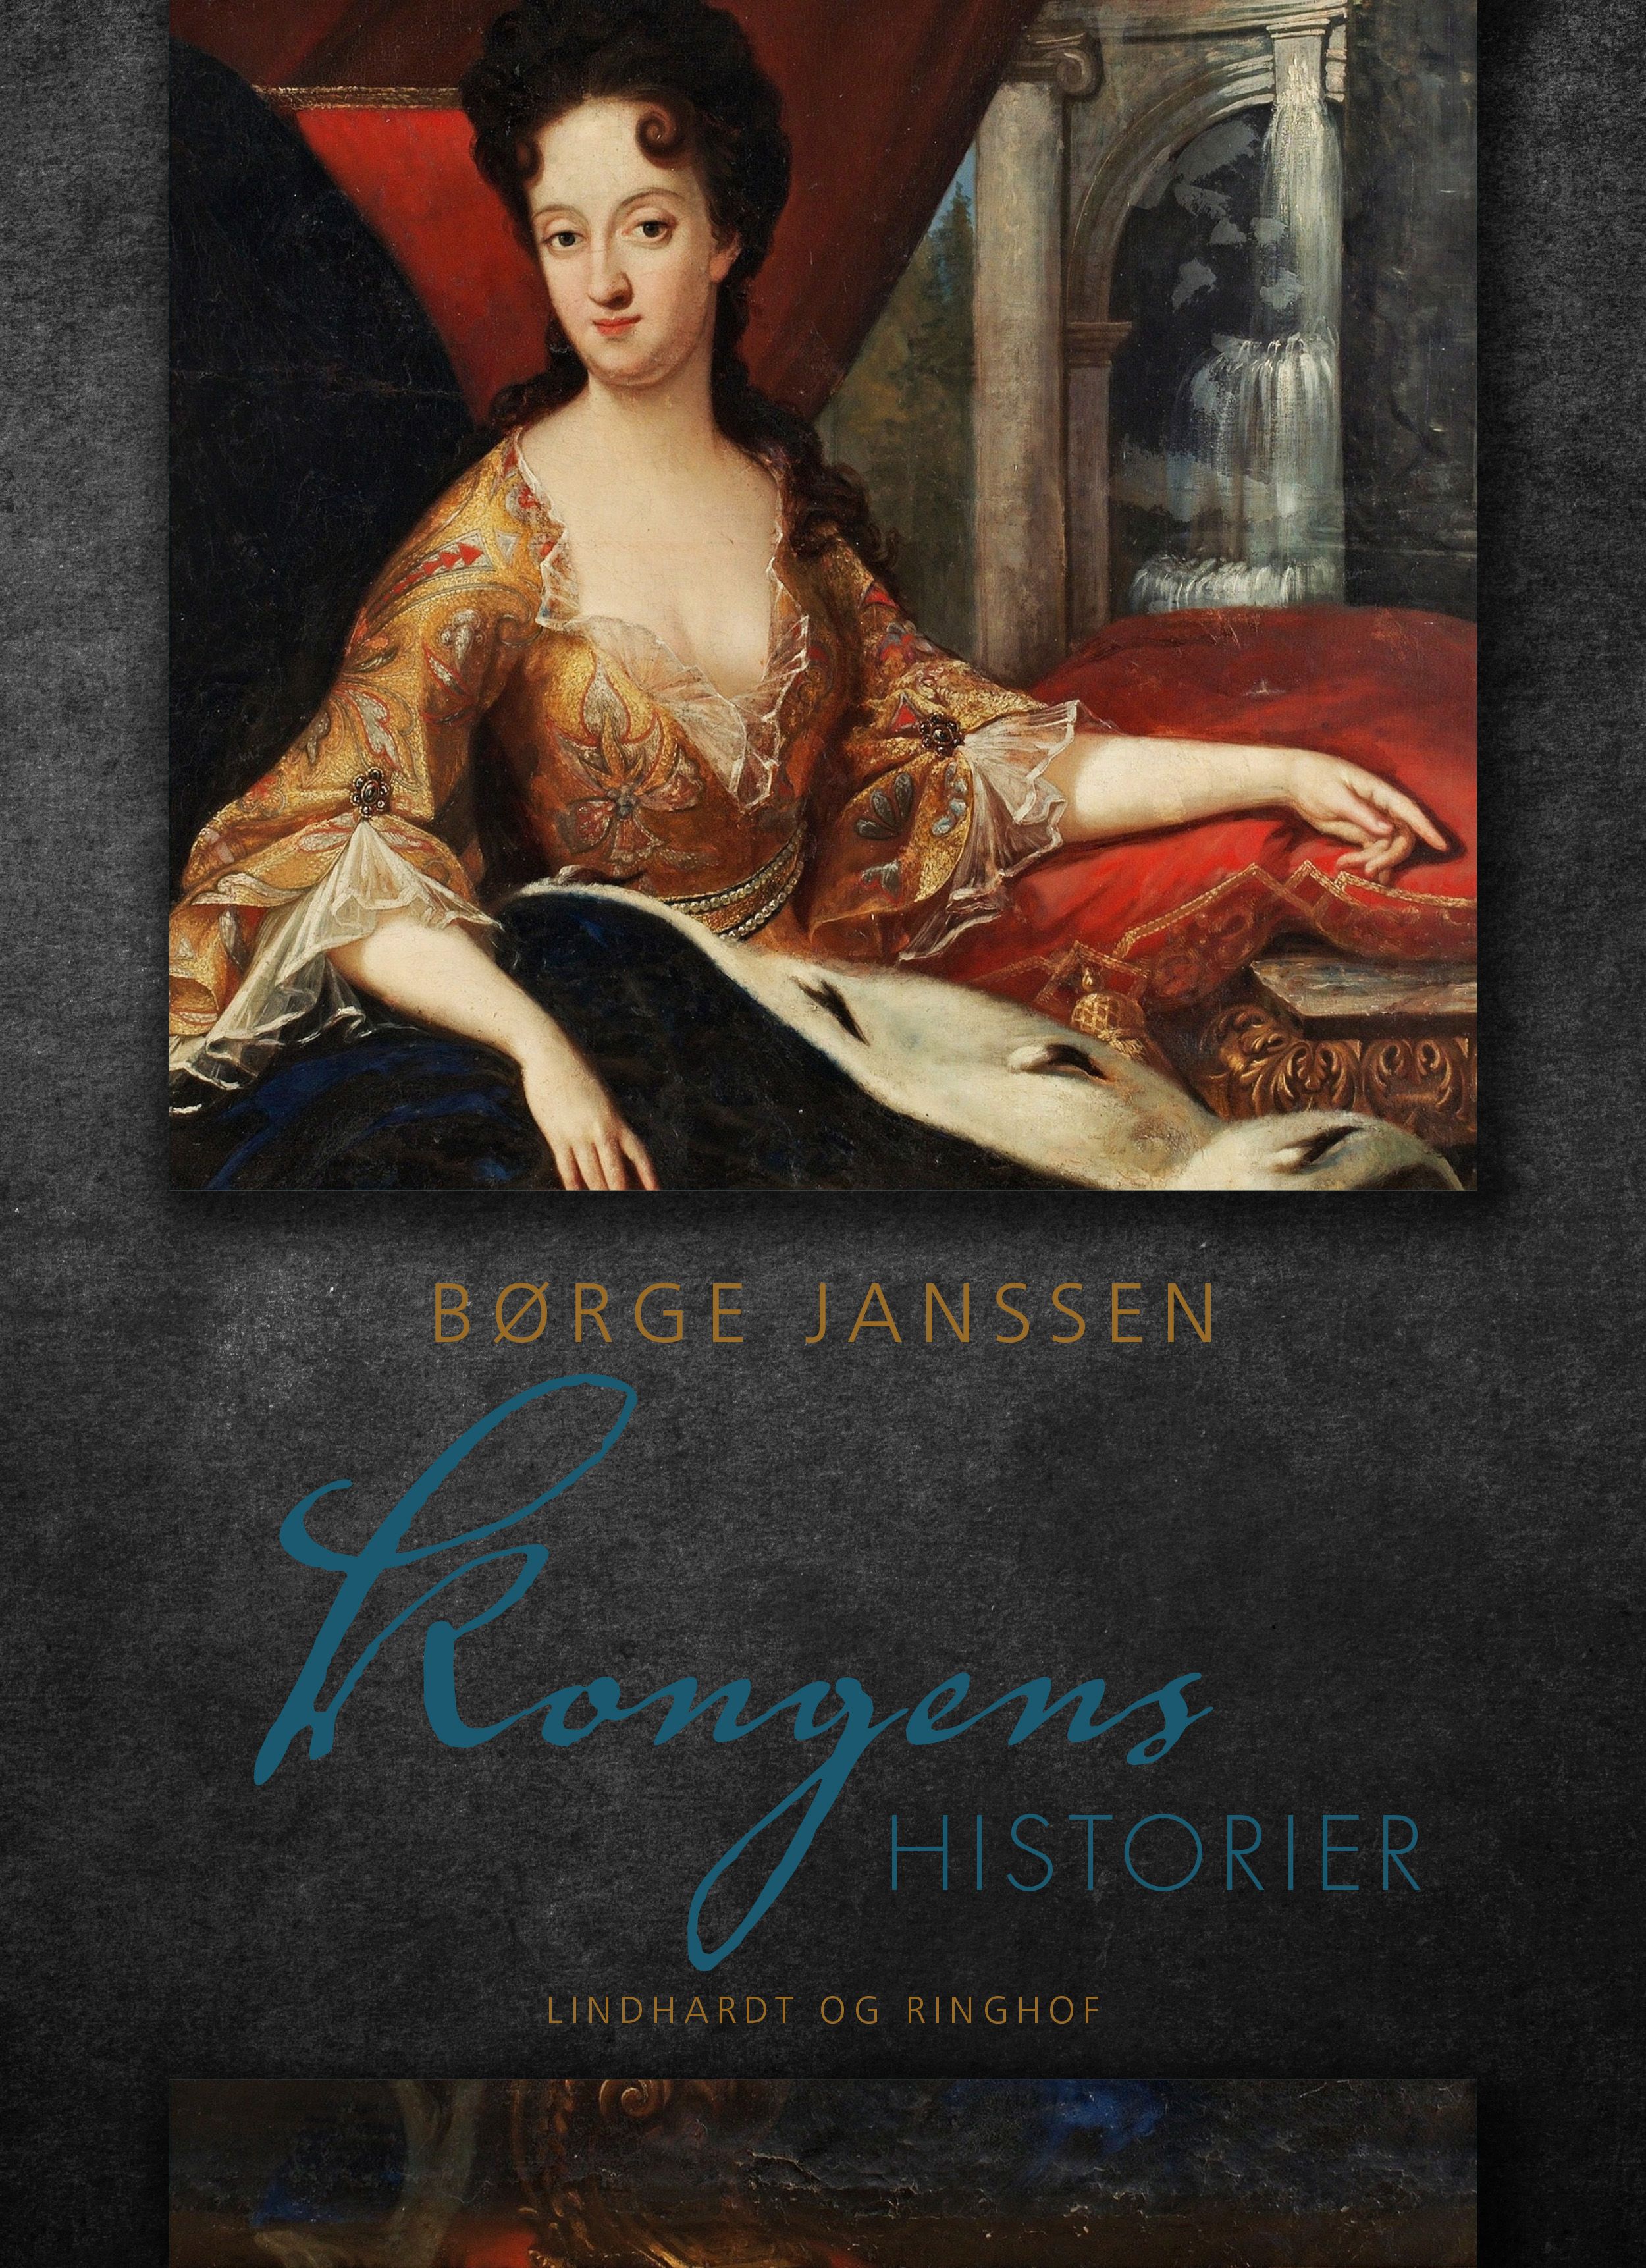 Kongens historier, e-bok av Børge Janssen